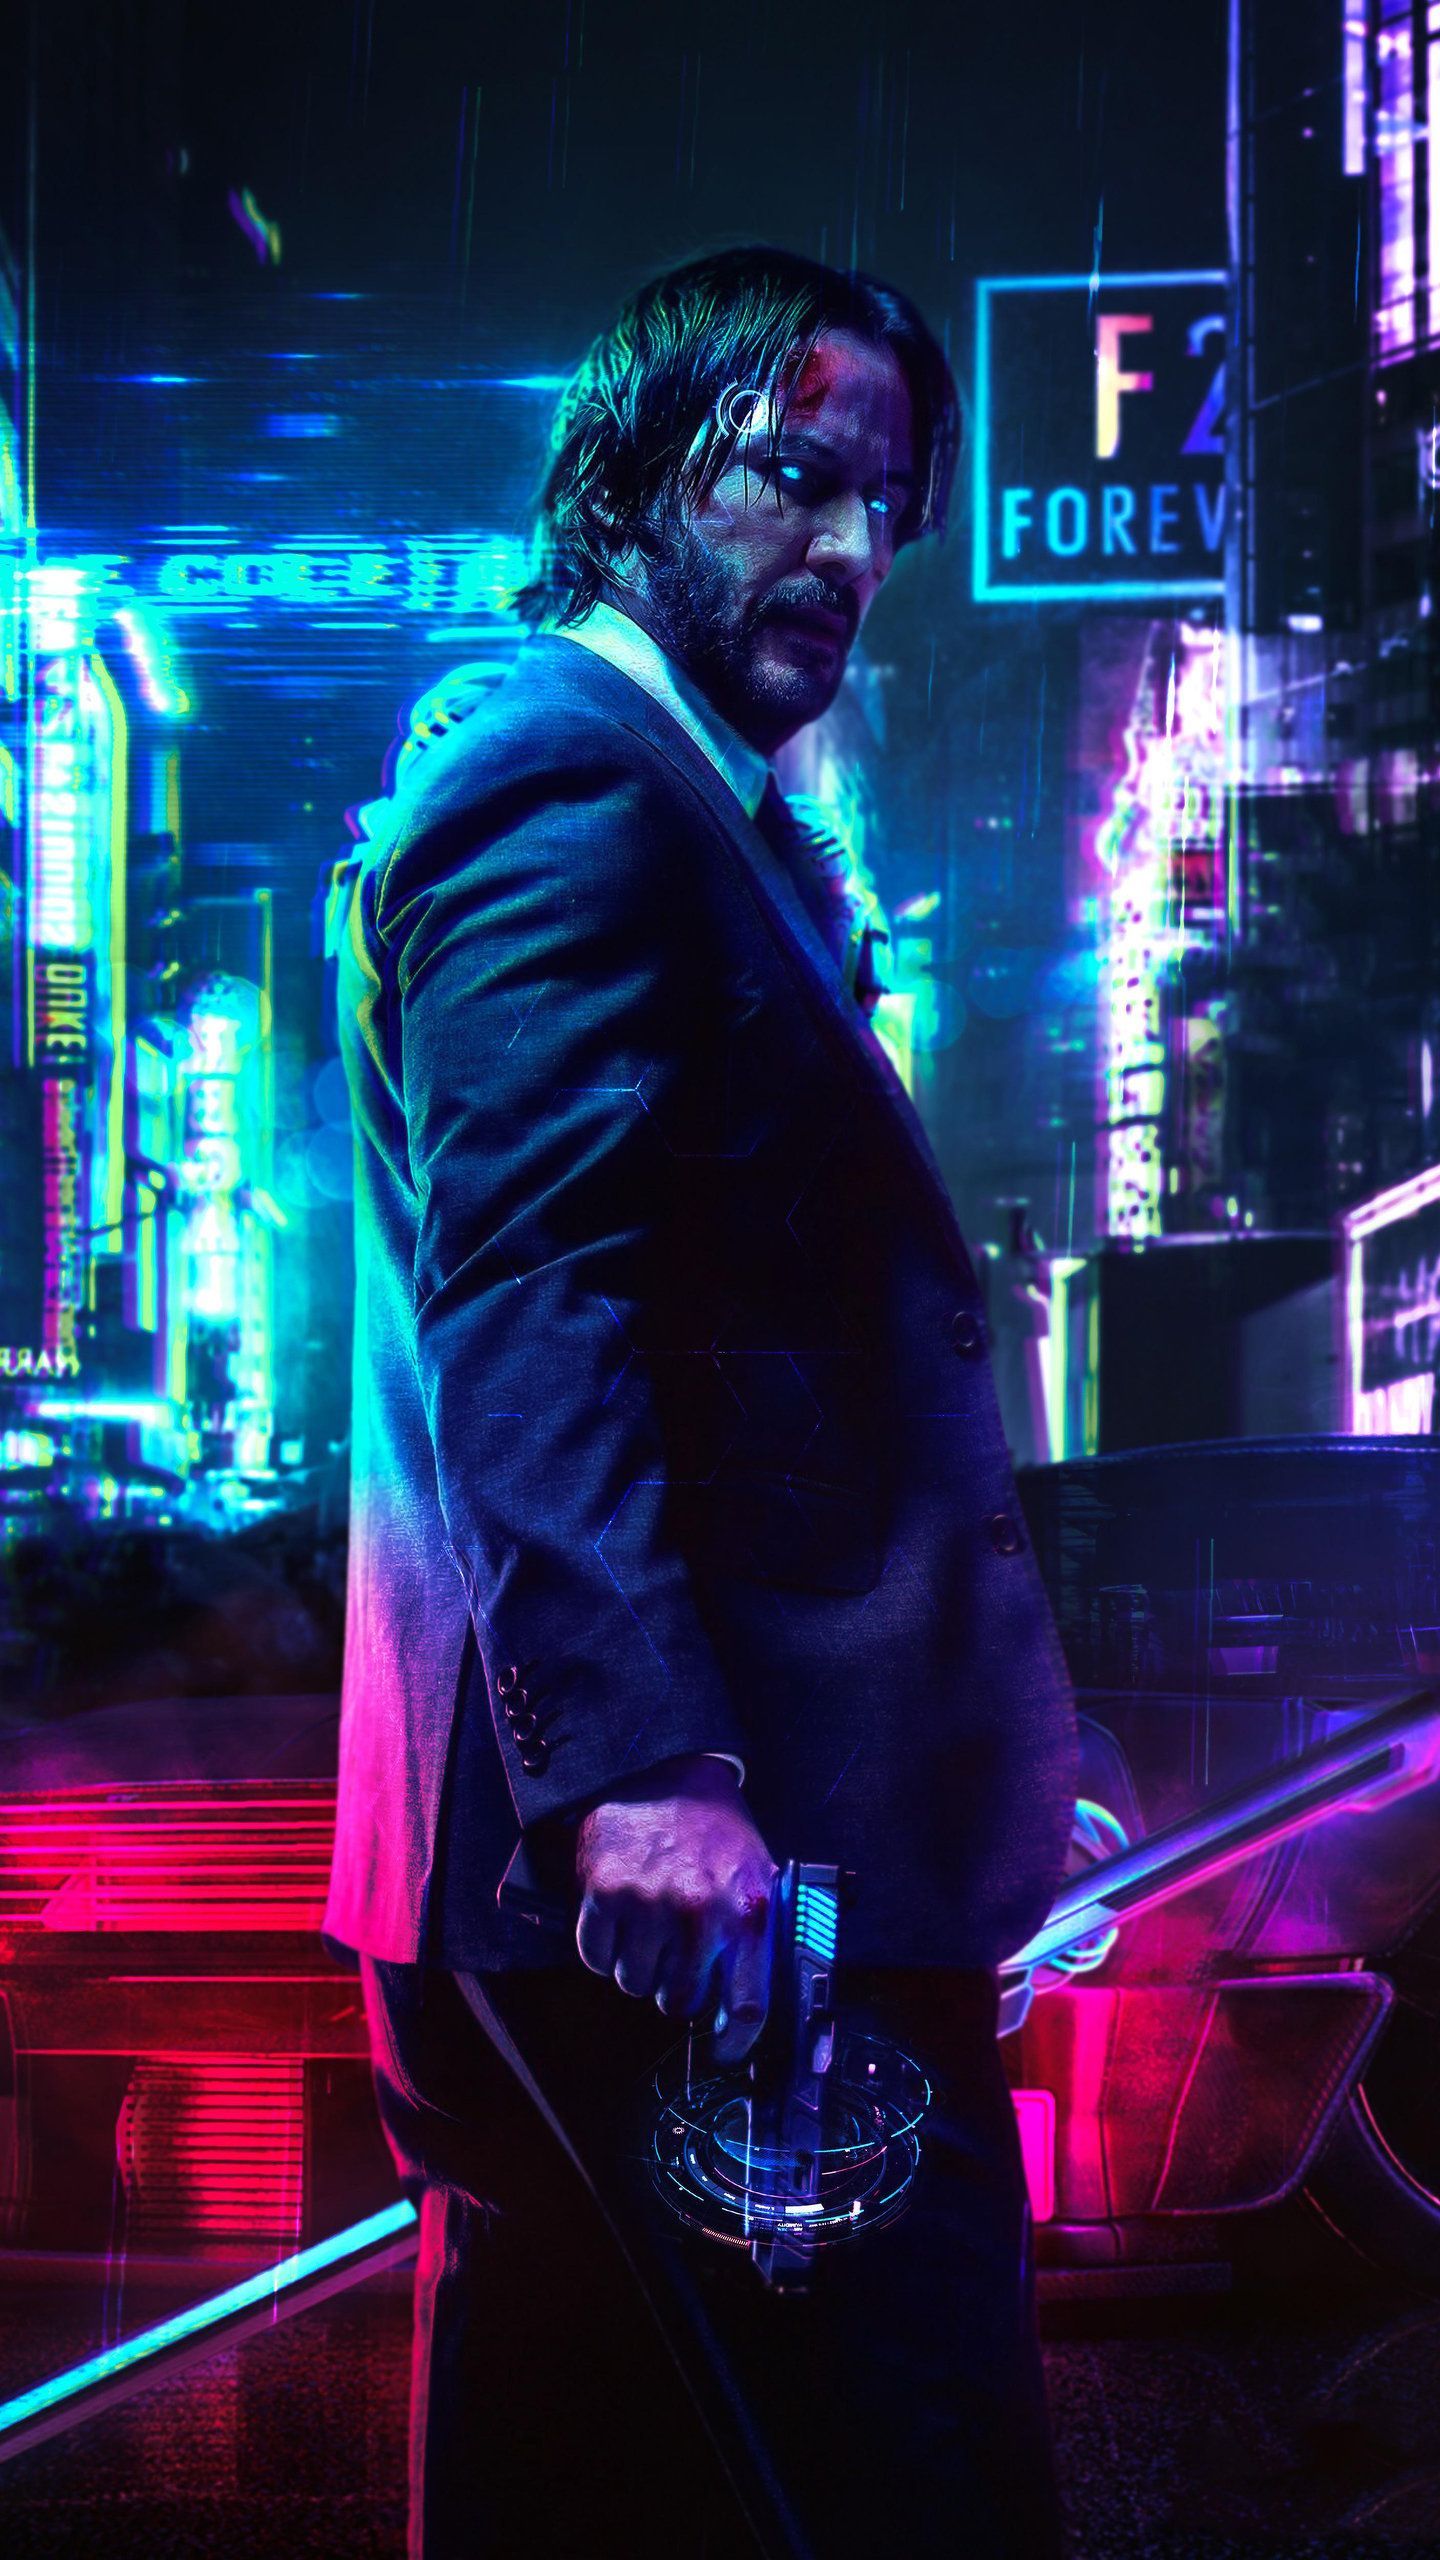 Keanu Reeves Cyberpunk 2077 FanArt HD Wallpaper. Cyberpunk 2077